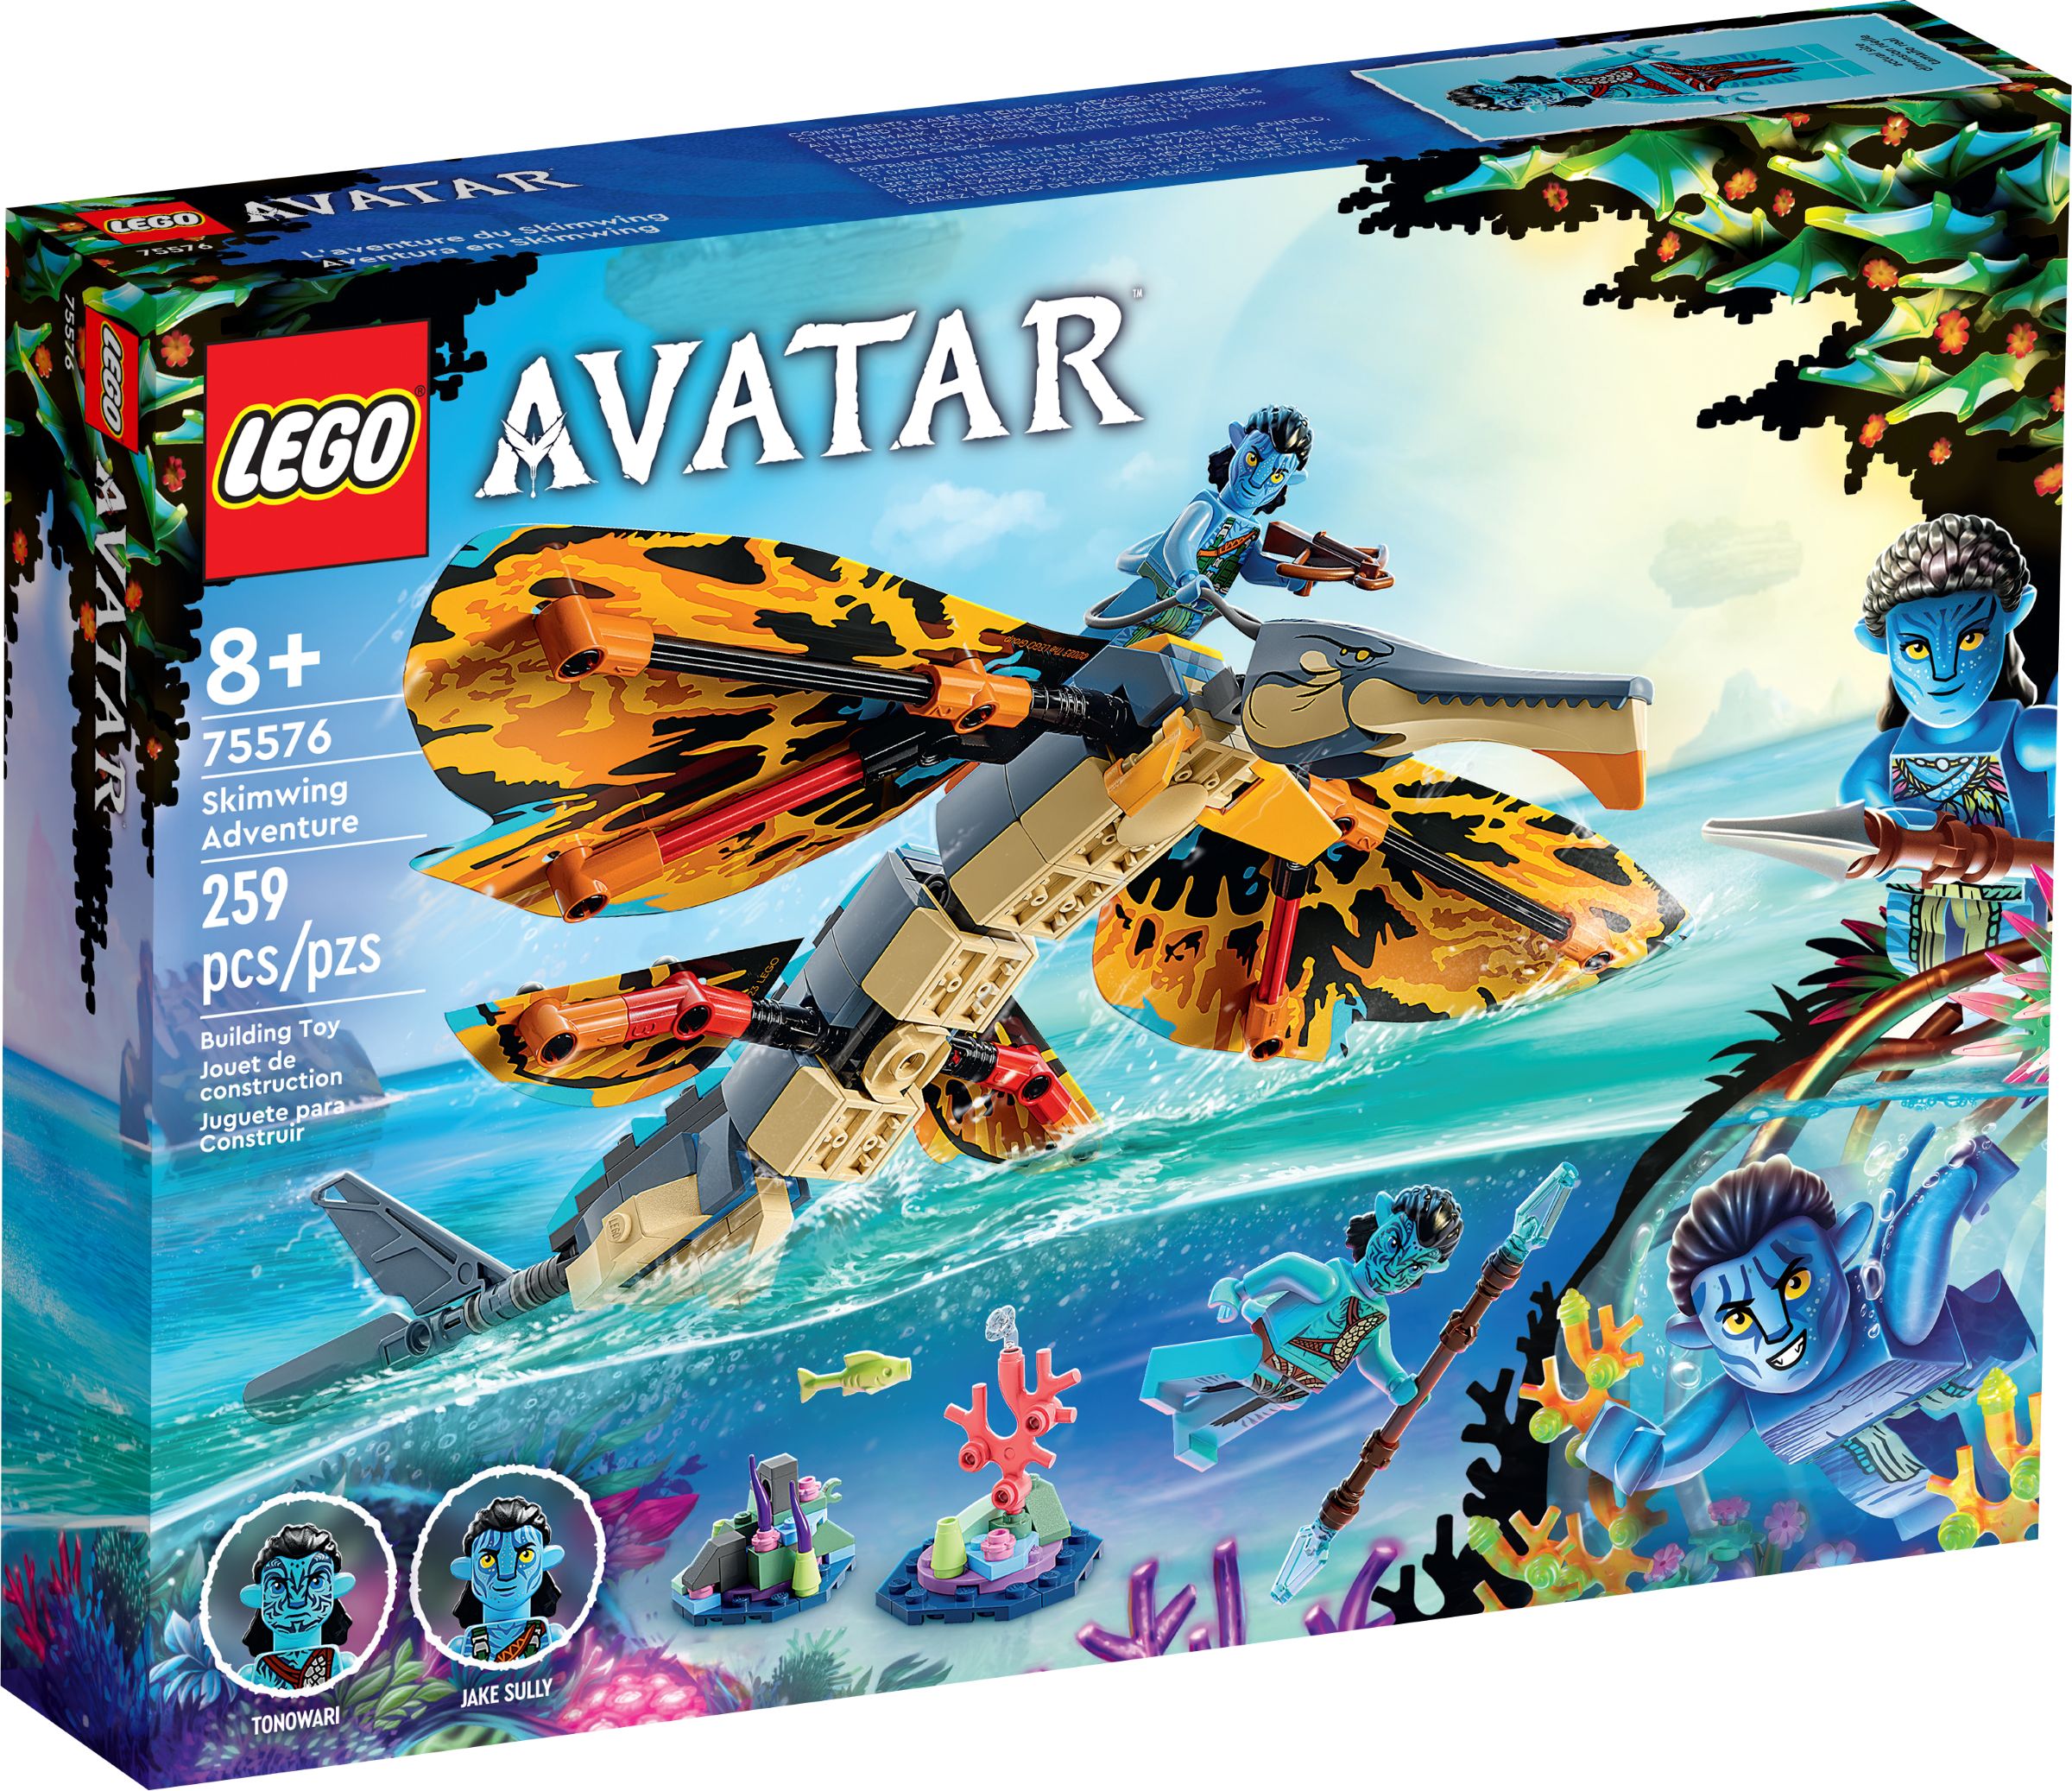 LEGO Avatar 75576 Skimwing Abenteuer LEGO_75576_alt1.jpg